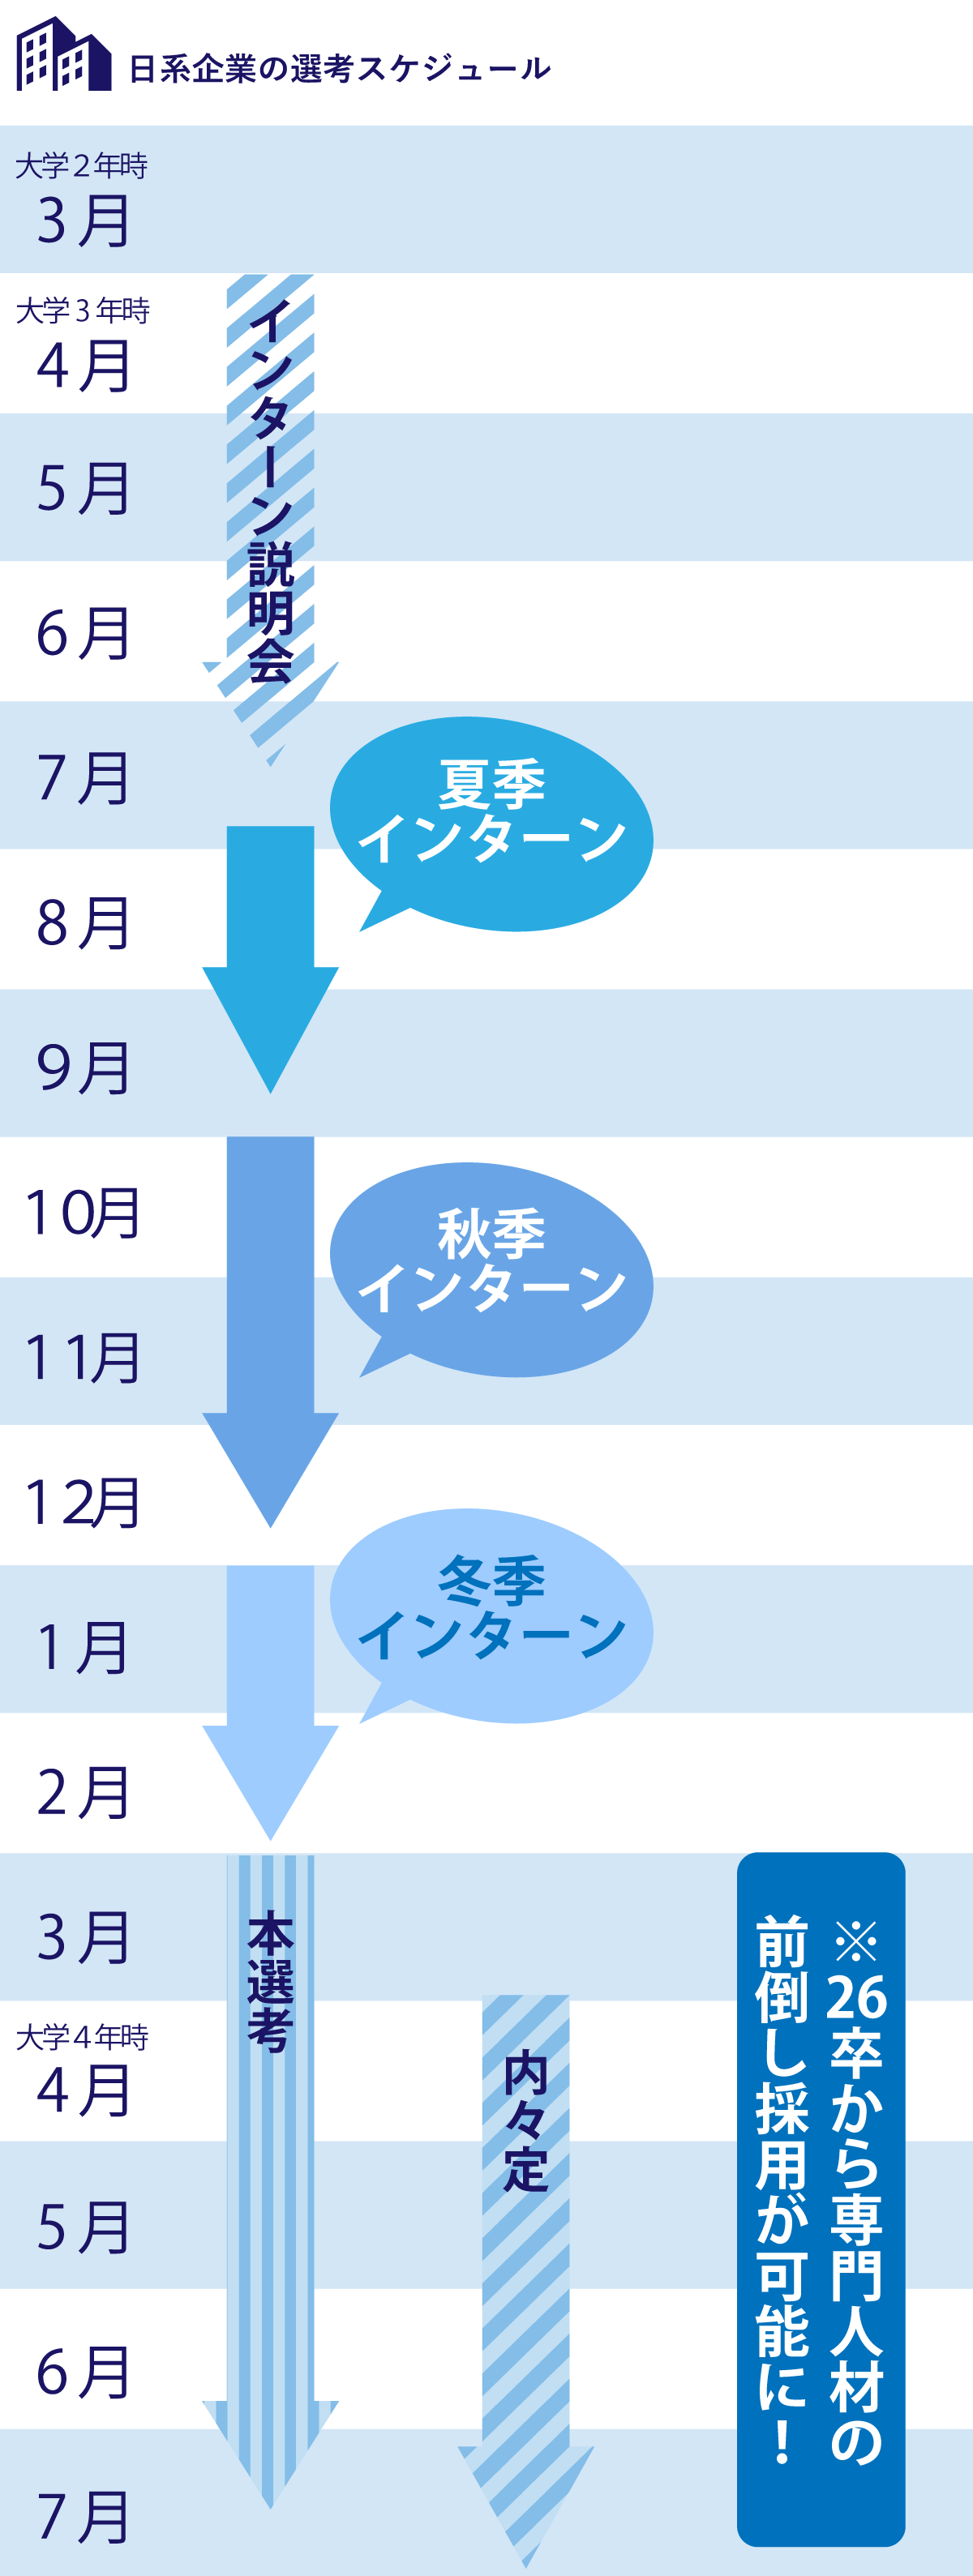 日系企業の選考スケジュールのイメージ図